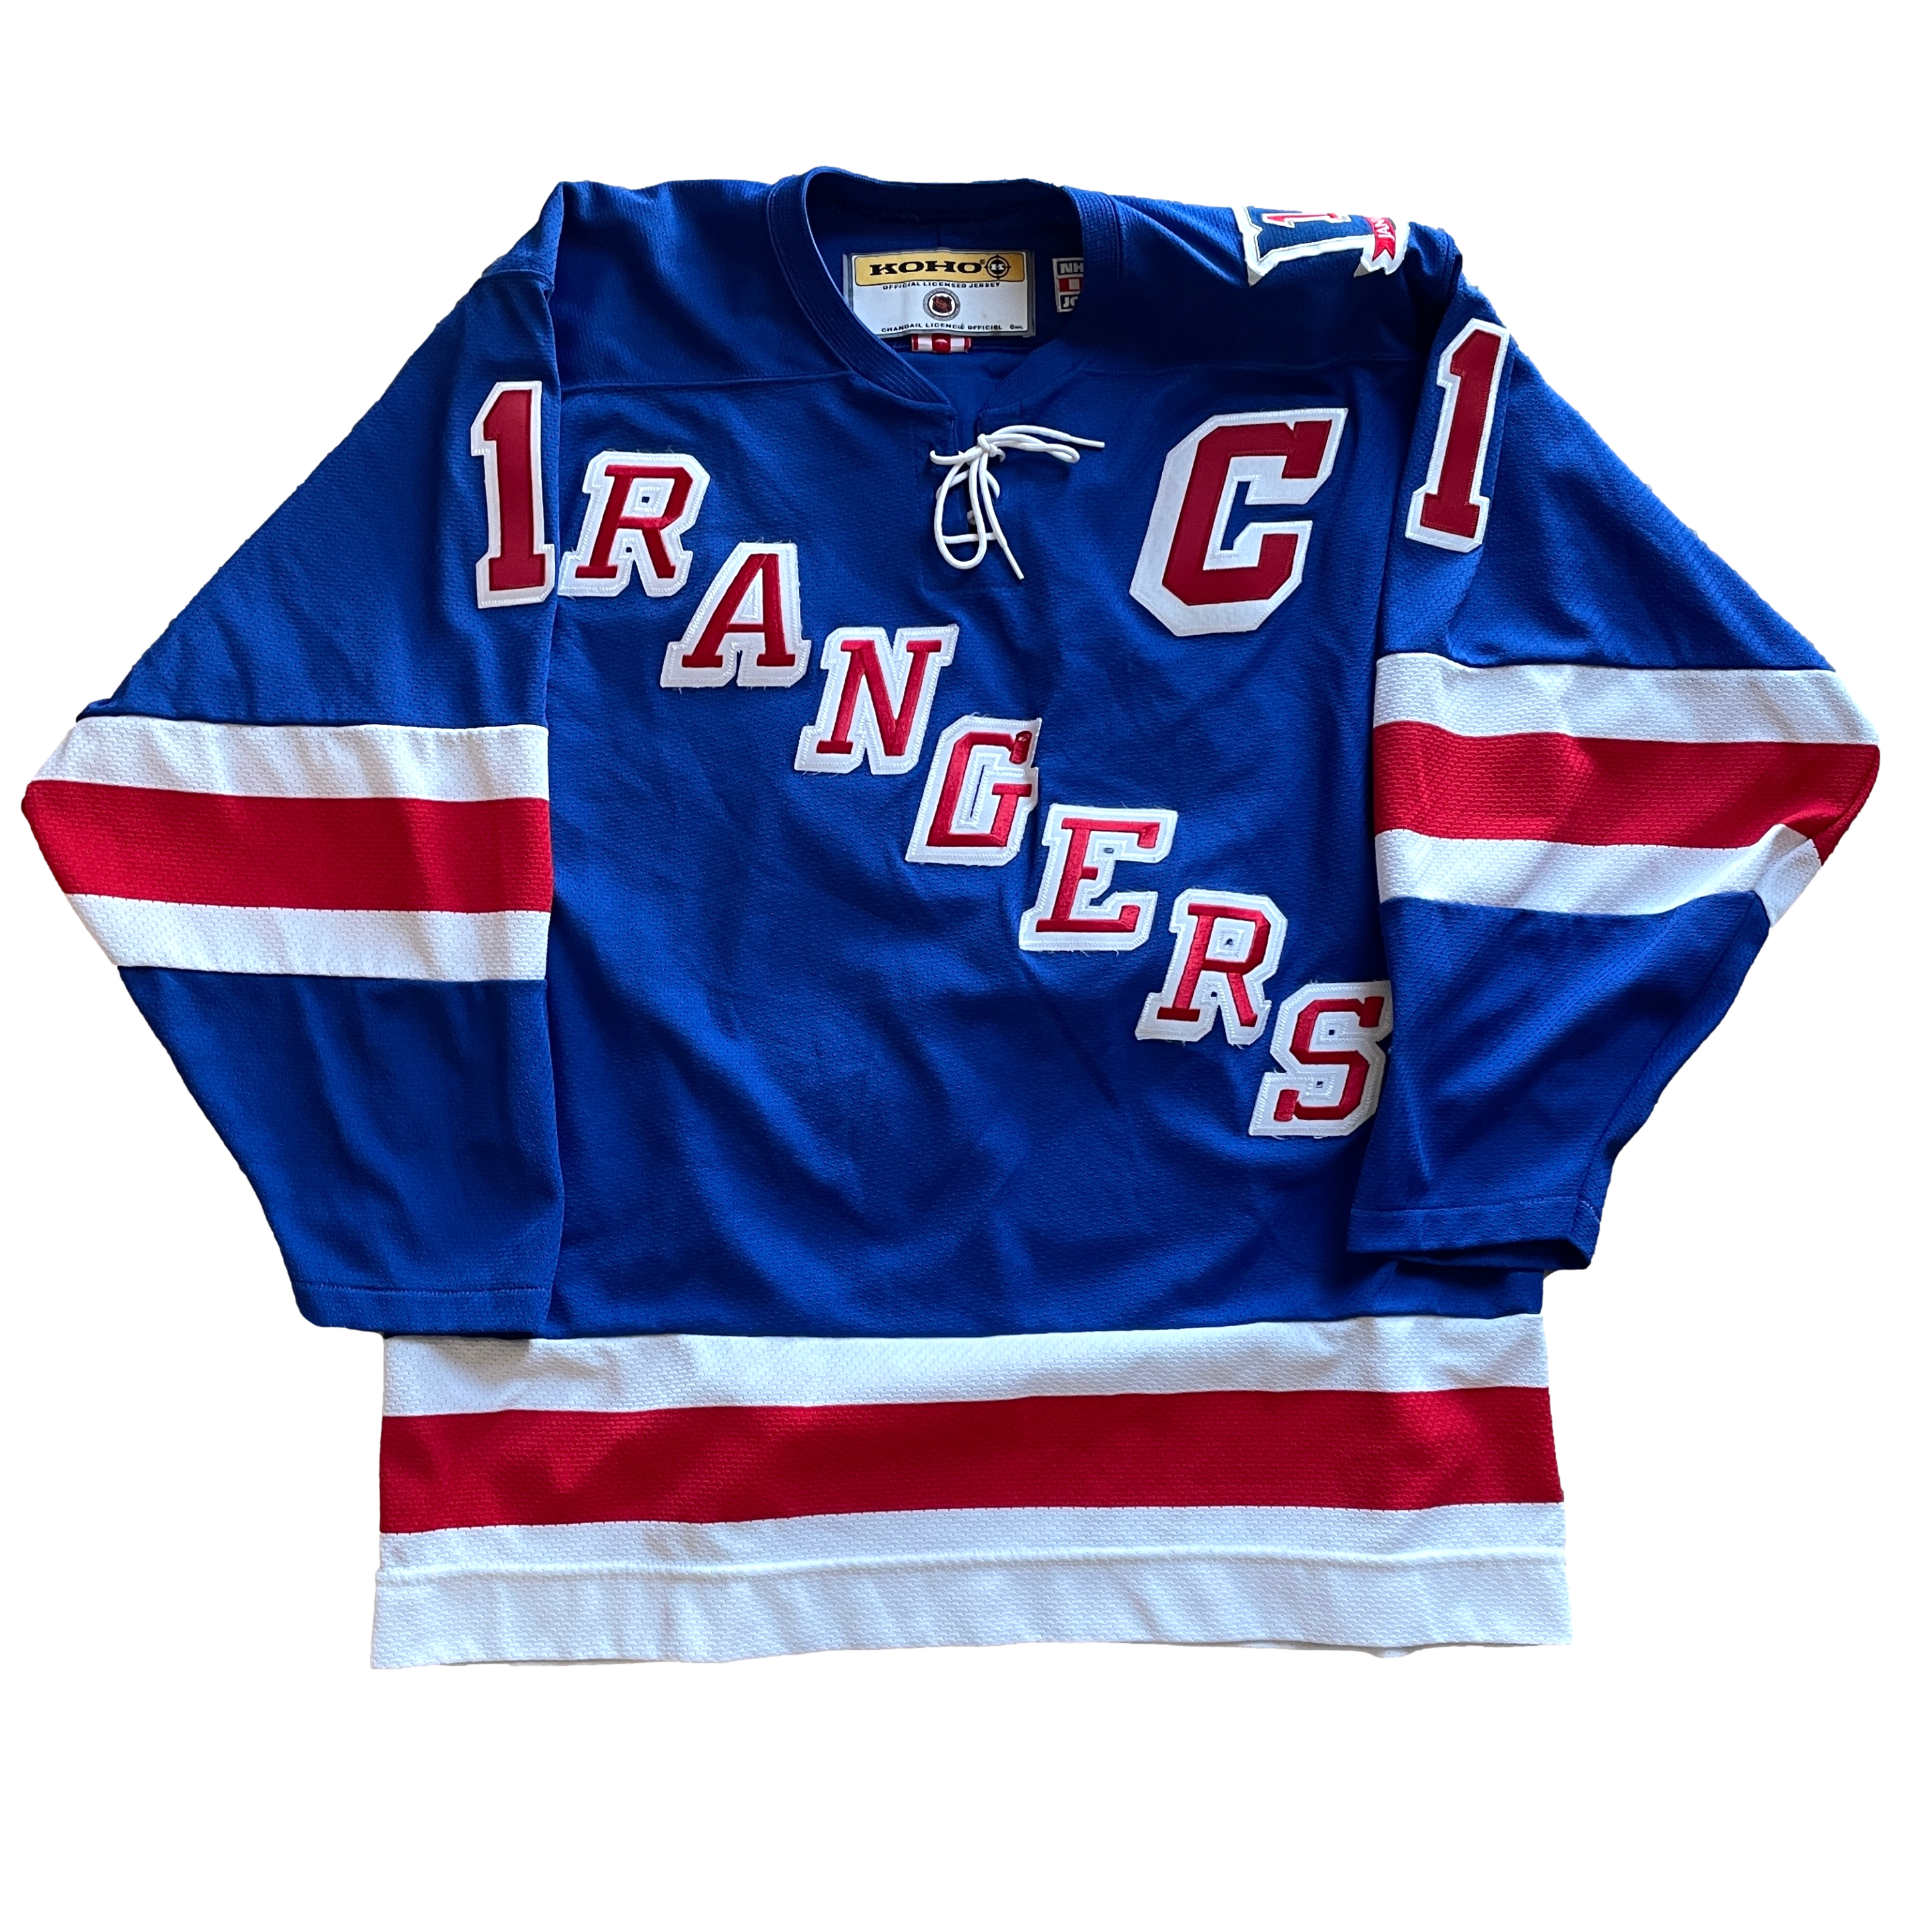 New York Slapshots vintage hockey jersey